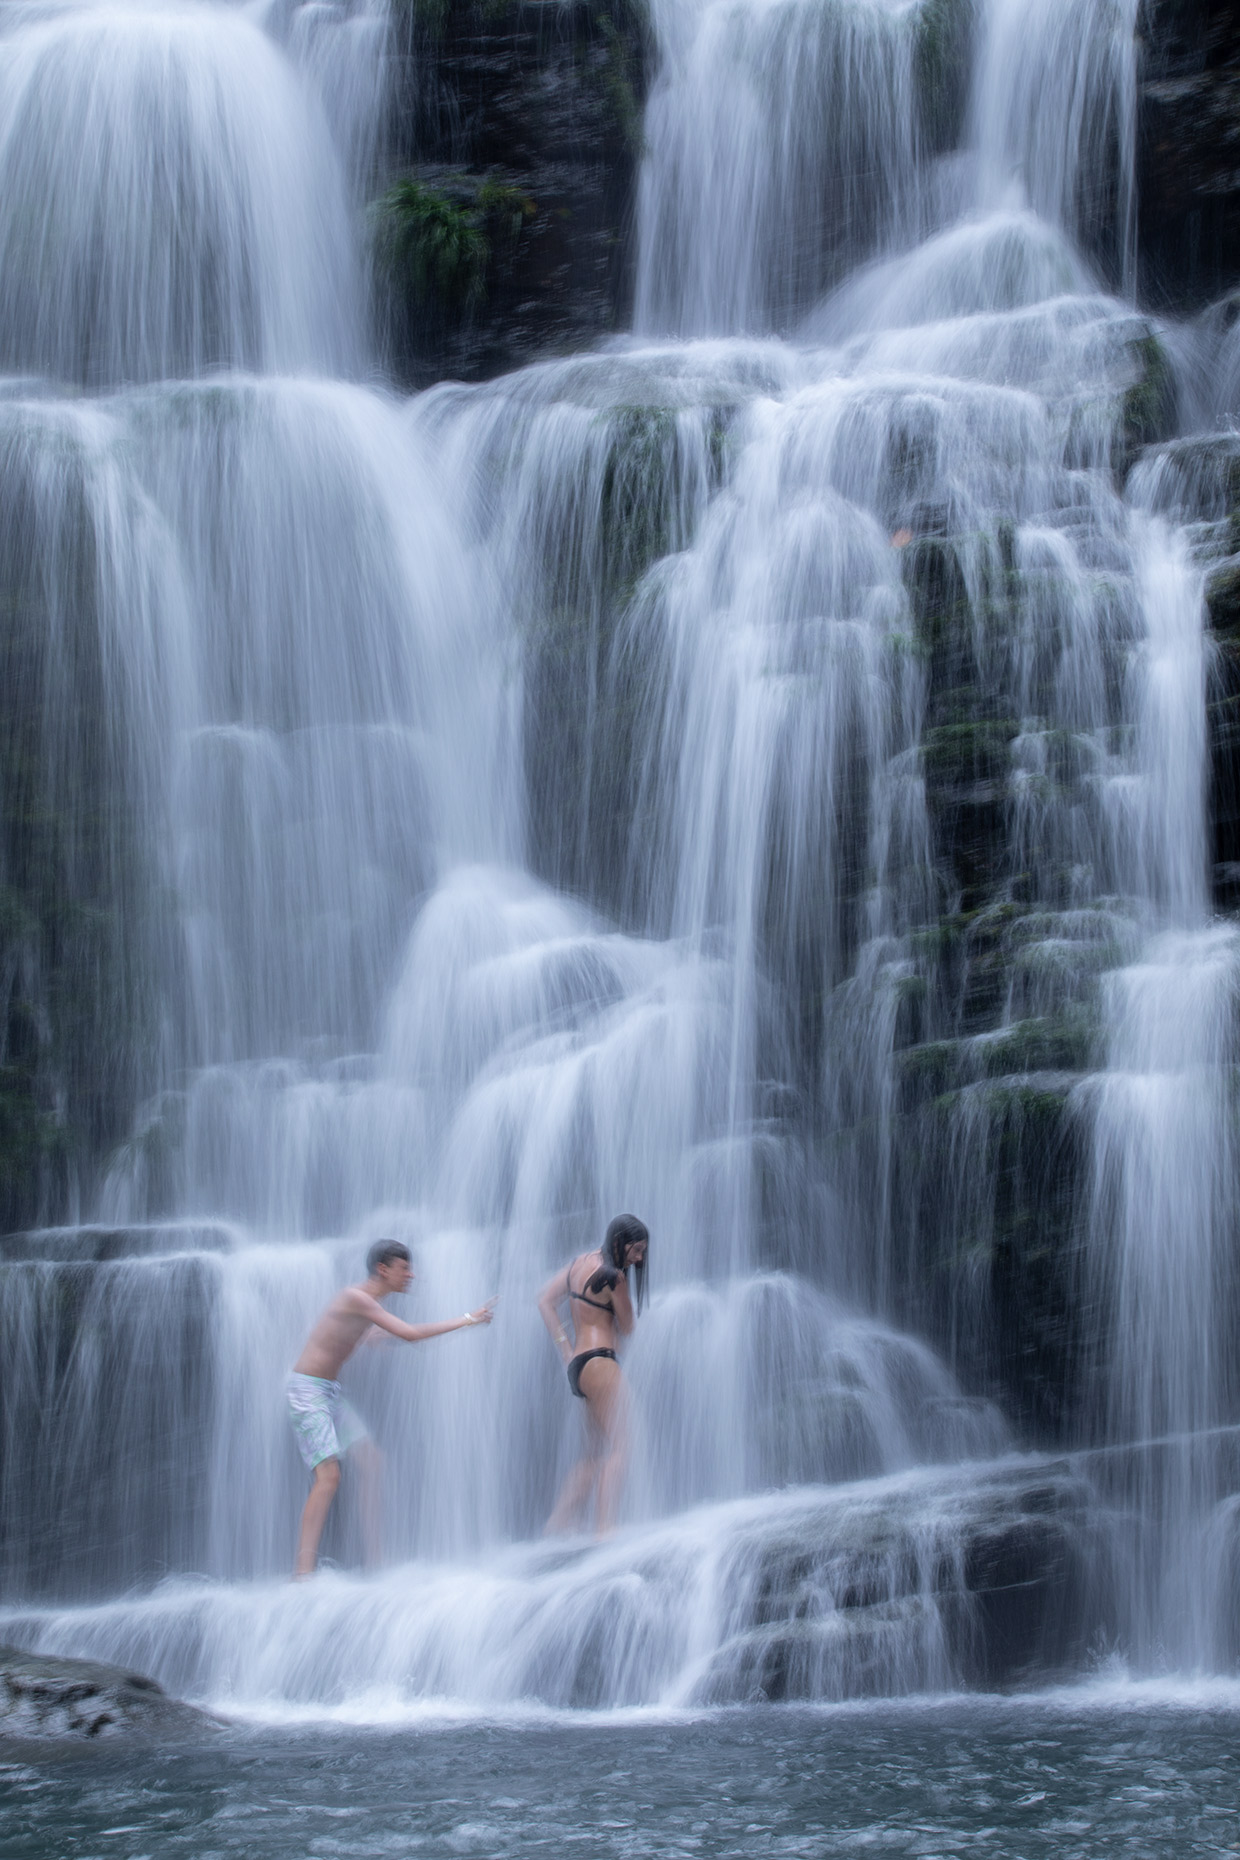 Nauyaca waterfalls in Costa Rica